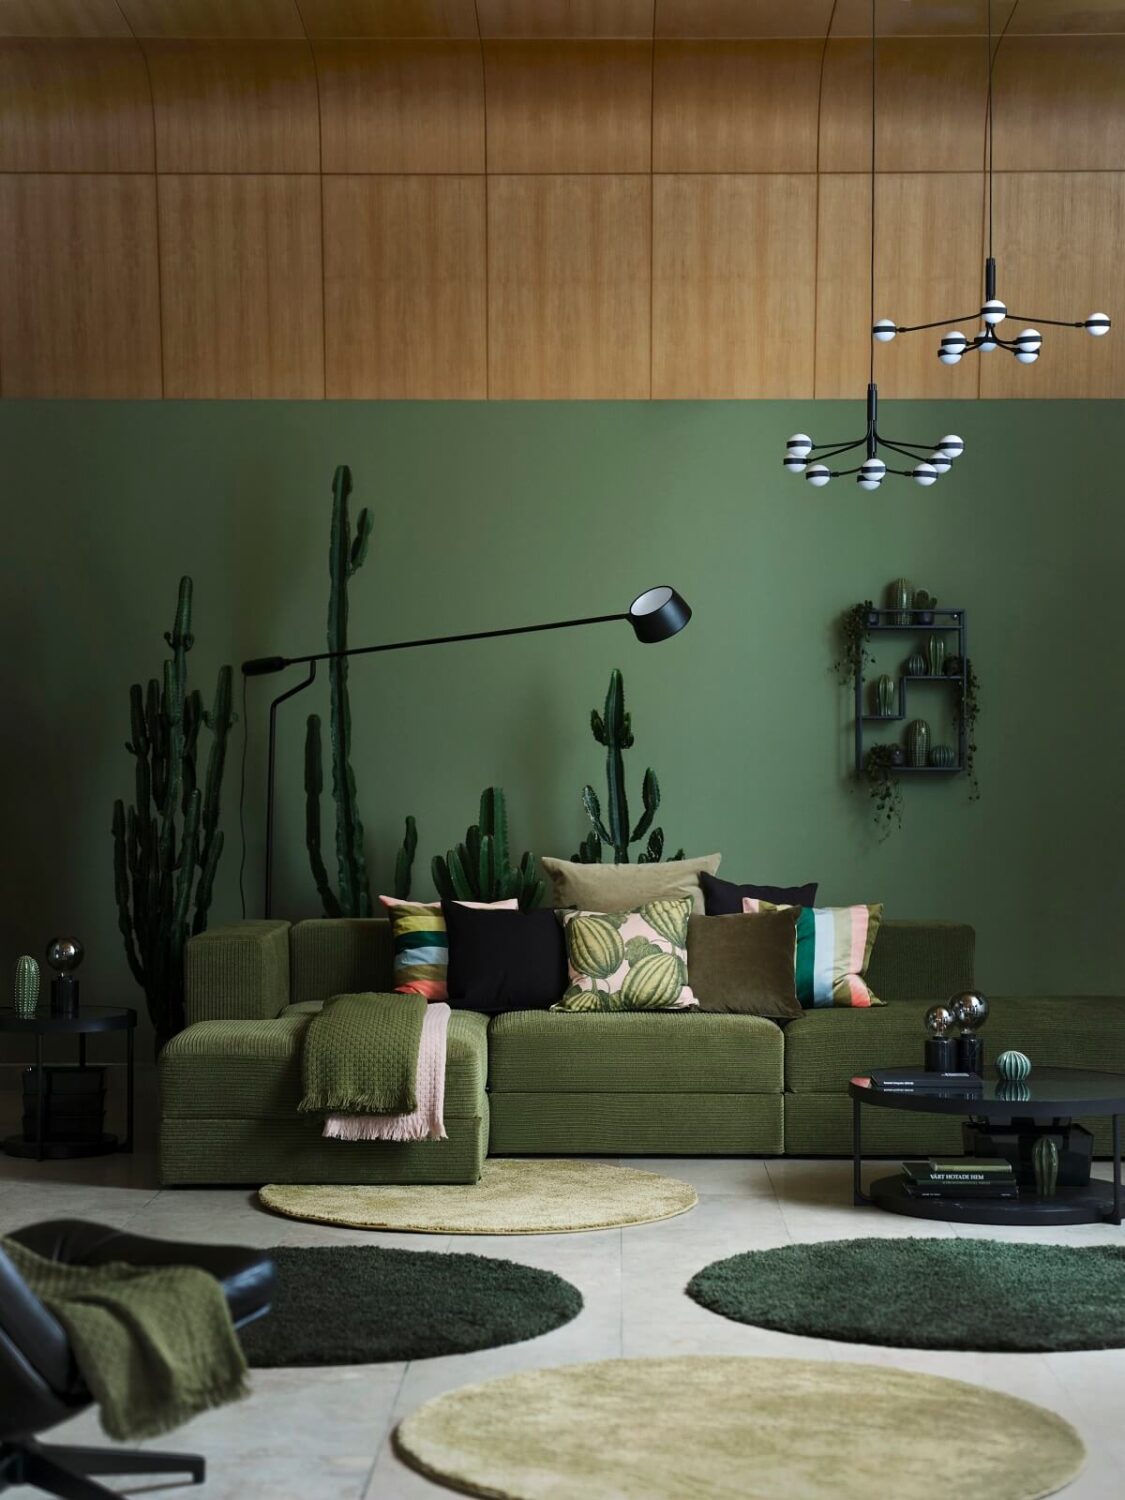 IKEA-spring-collection-2023-JÄTTEBO-sofa-VÅgHÖjD-floor-lamp-green-living-room-nordroom